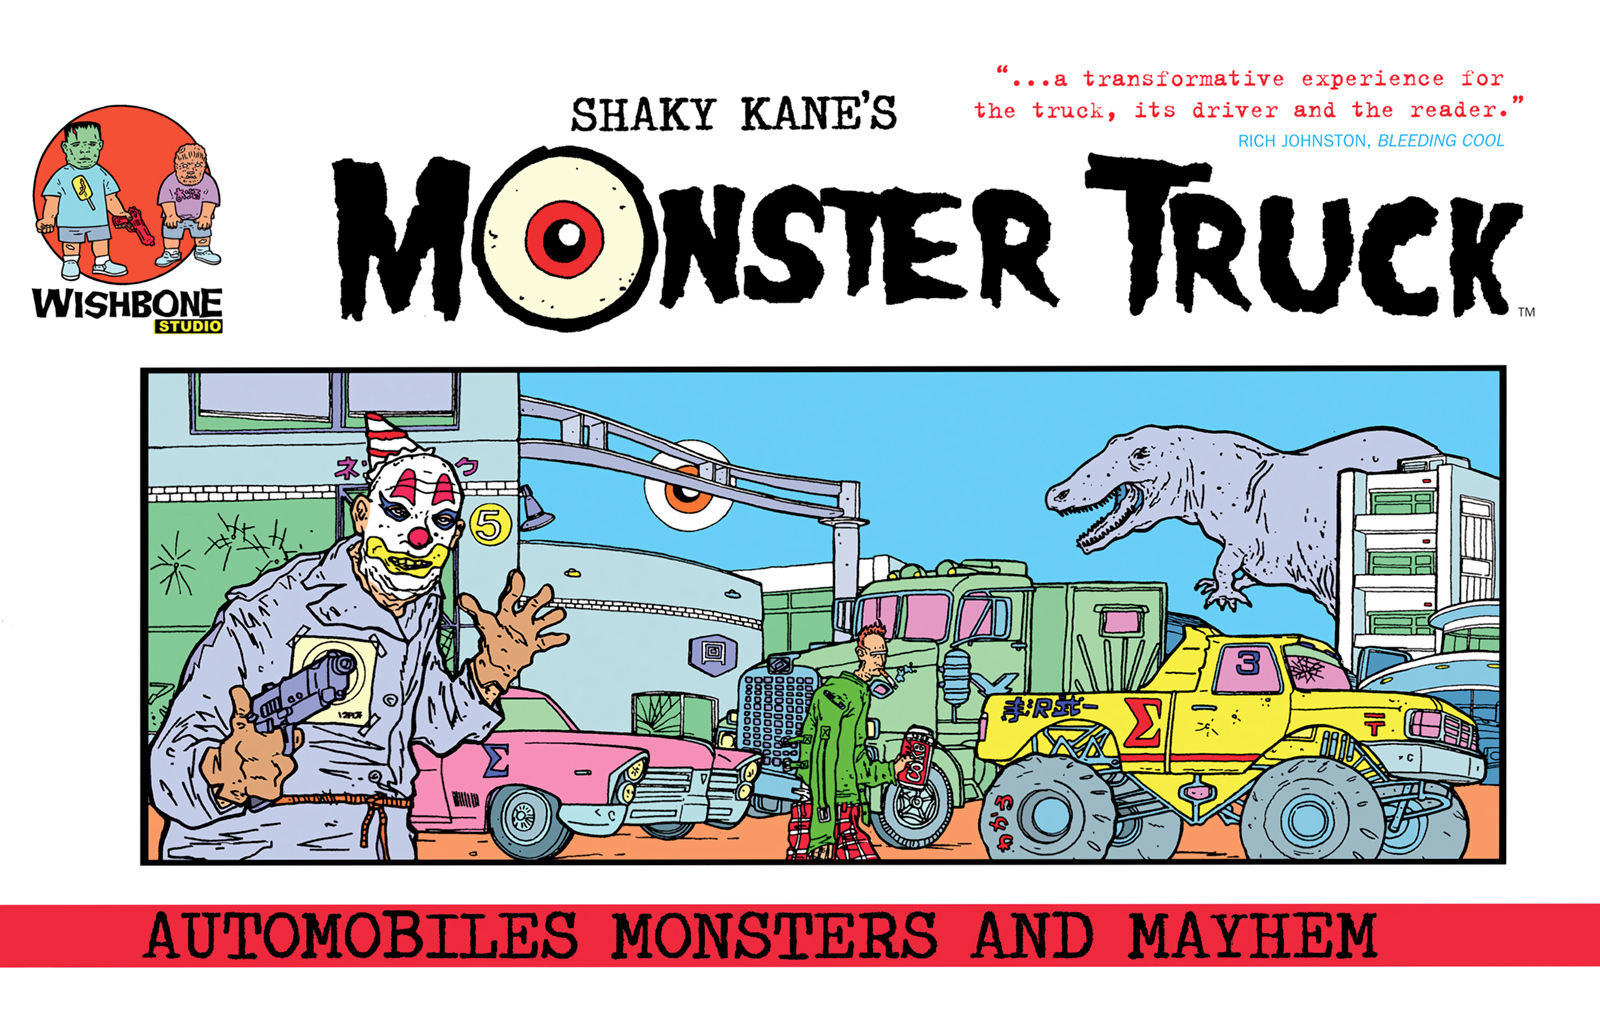 Shaky Kane's Monster Truck Cover